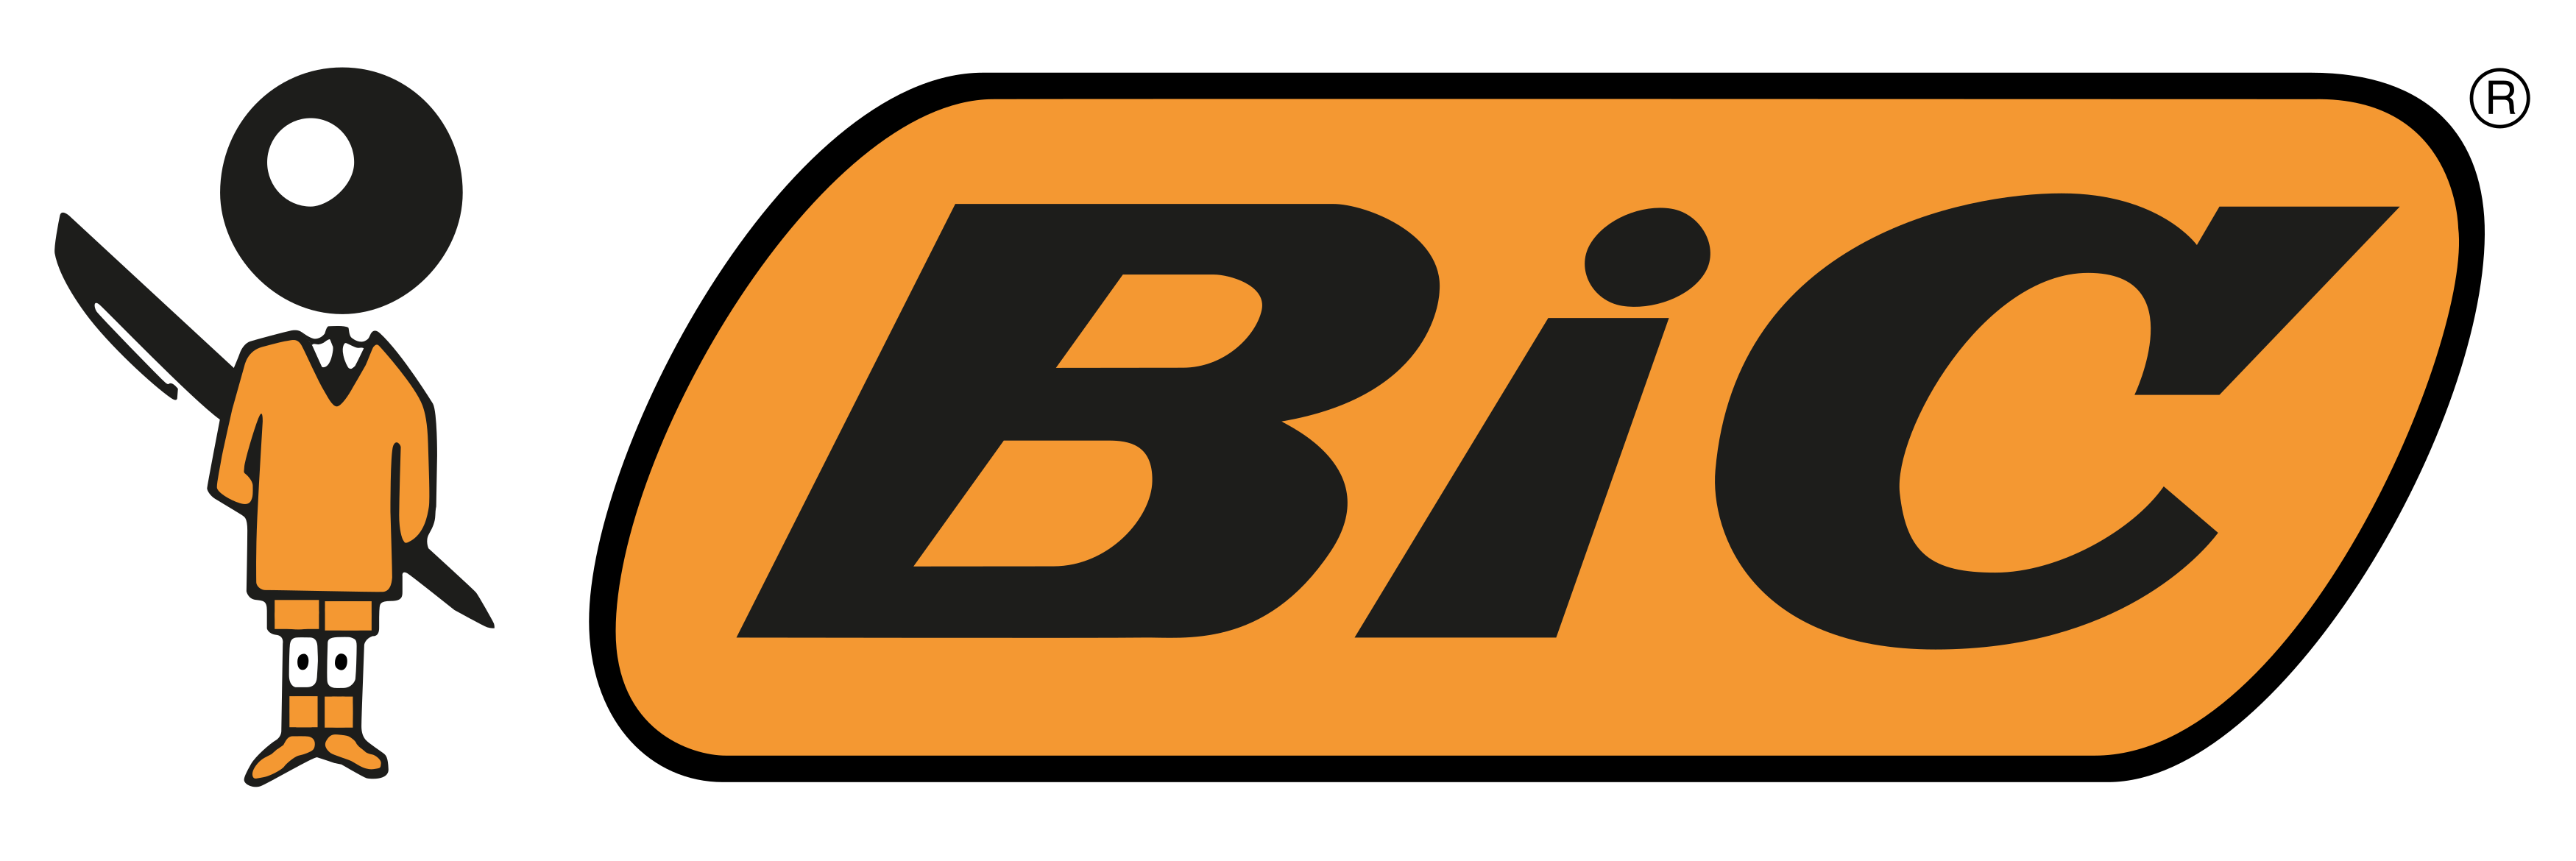 bic logo 1 - Bic Logo